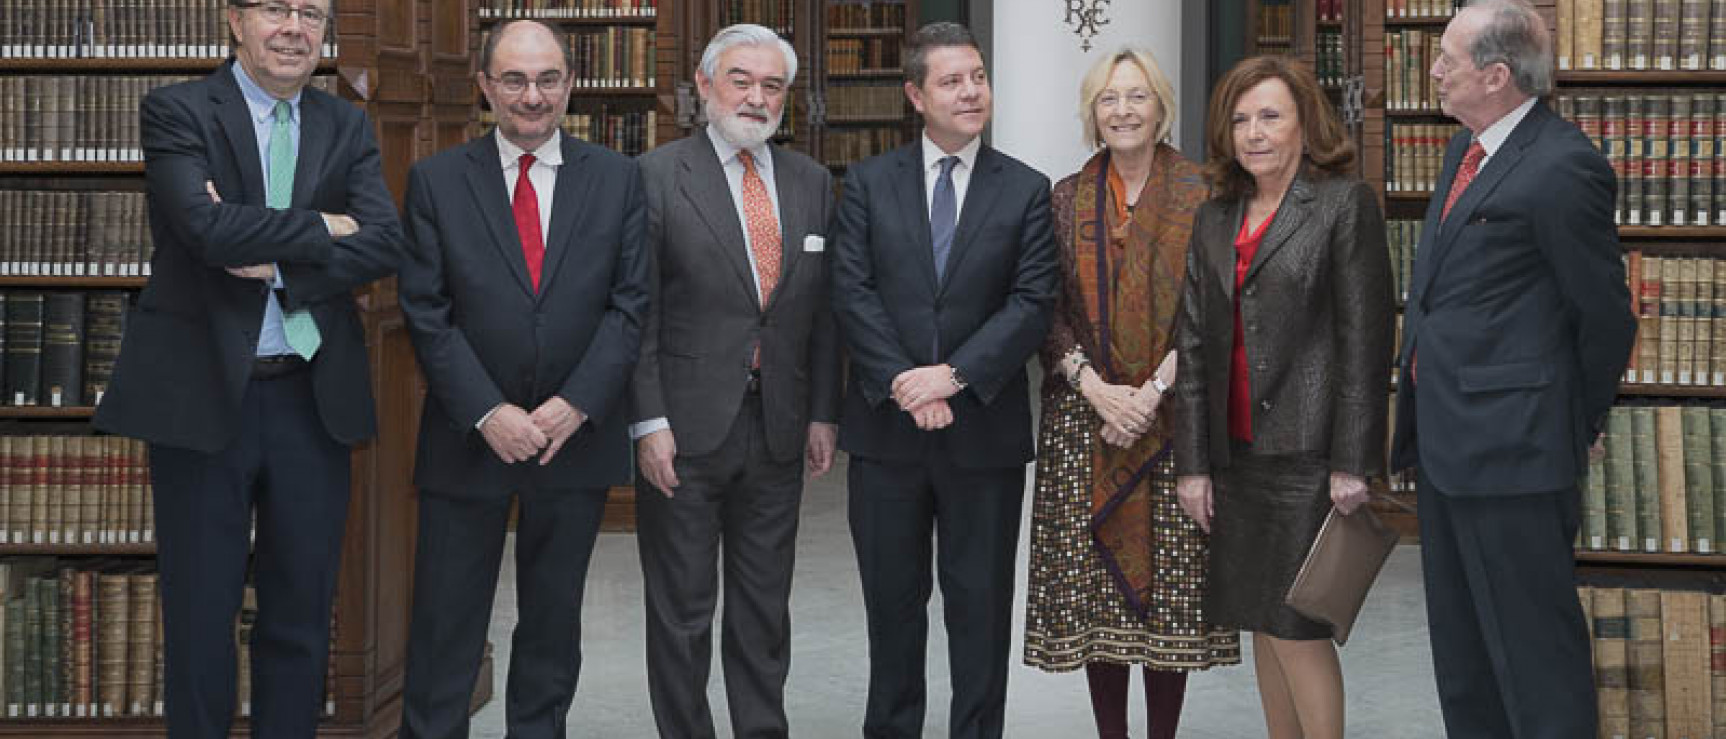 Los presidentes de Castilla-La Mancha y Aragón, Emiliano García-Page y Javier Lambán, junto a los académicos.